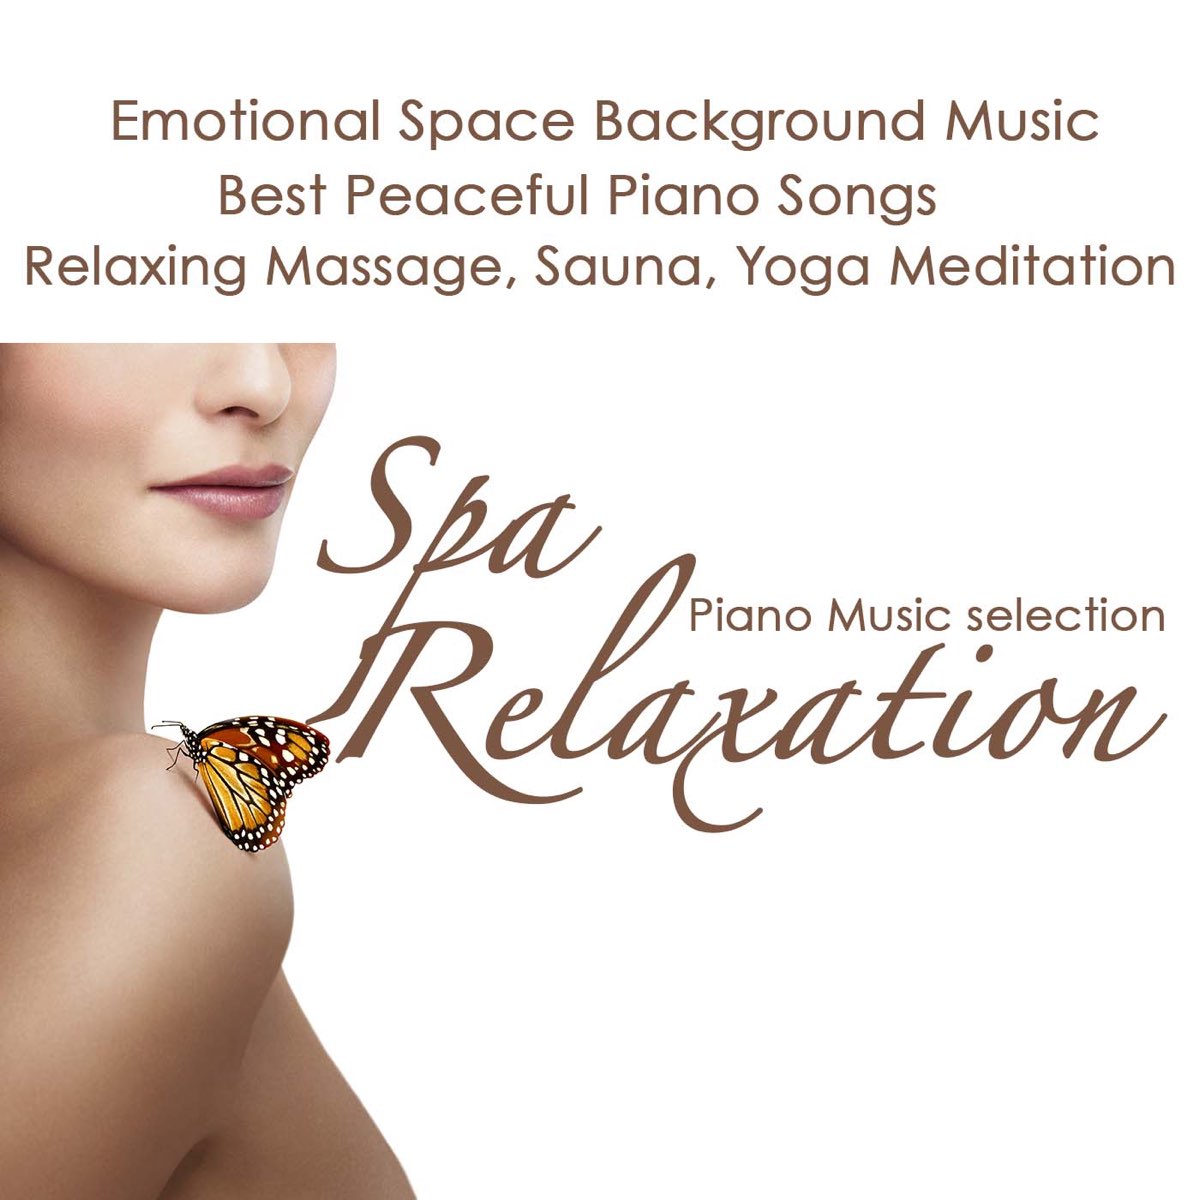 Bạn muốn trải nghiệm một liệu pháp thư giãn tuyệt vời ở Spa với âm thanh đầy tình cảm của cây đàn Piano? Hãy bật nhạc nền thư giãn và cảm nhận cảm giác bình yên và quyến rũ đến từ khoảnh khắc thư giãn tuyệt vời này! 